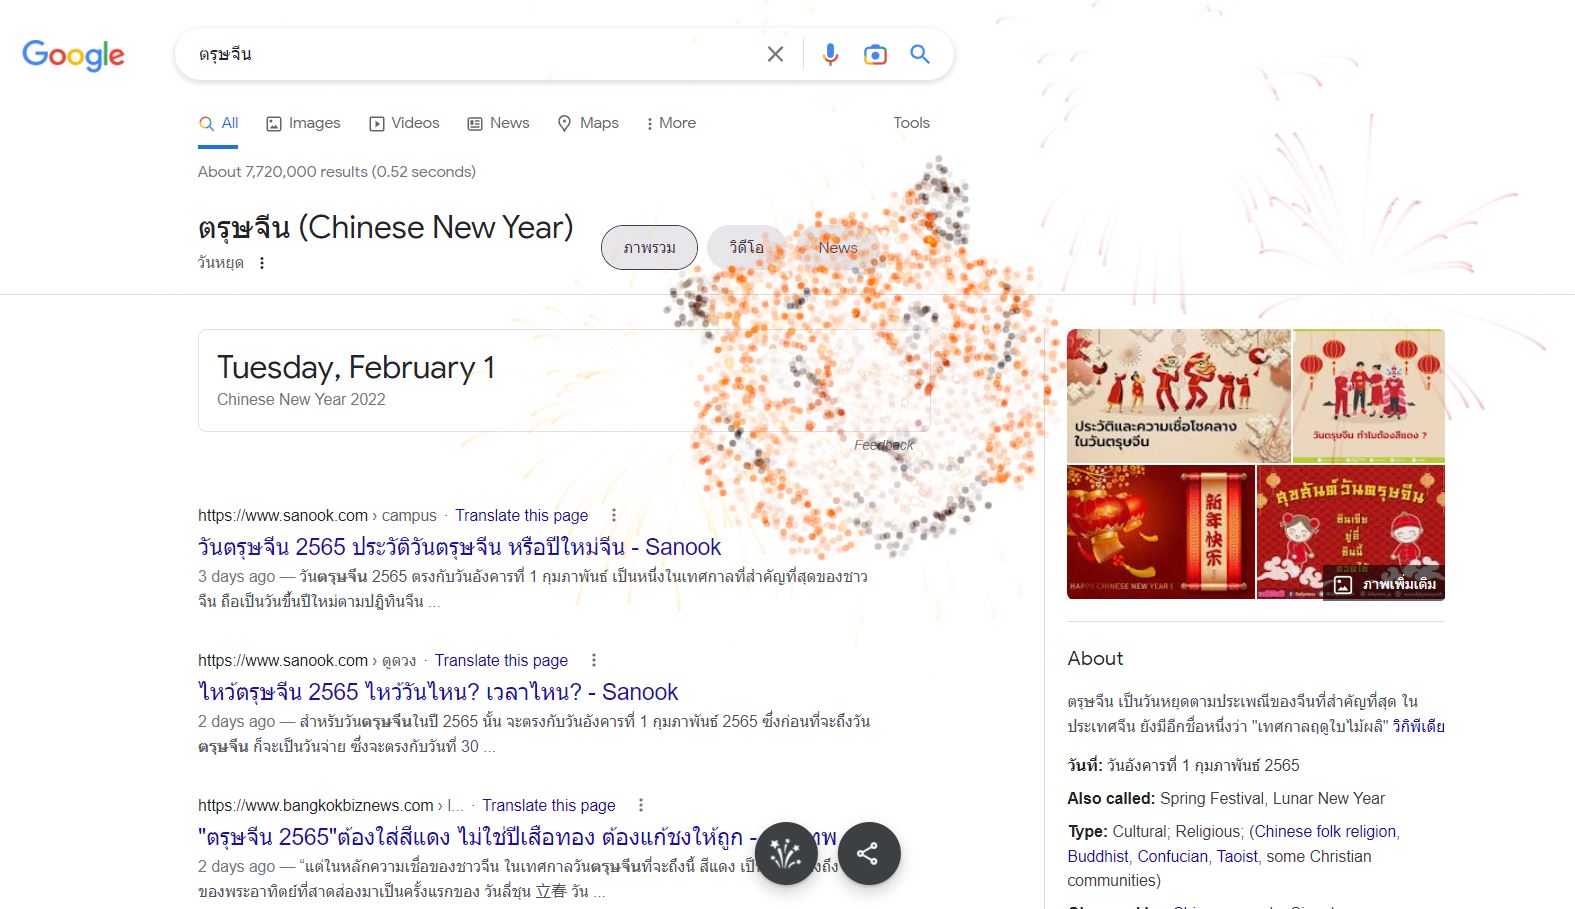 ชวนเล่น Easter Eggs วันตรุษจีนบน Google เพียงค้นหาศัพท์เกี่ยวกับปีใหม่จีน!